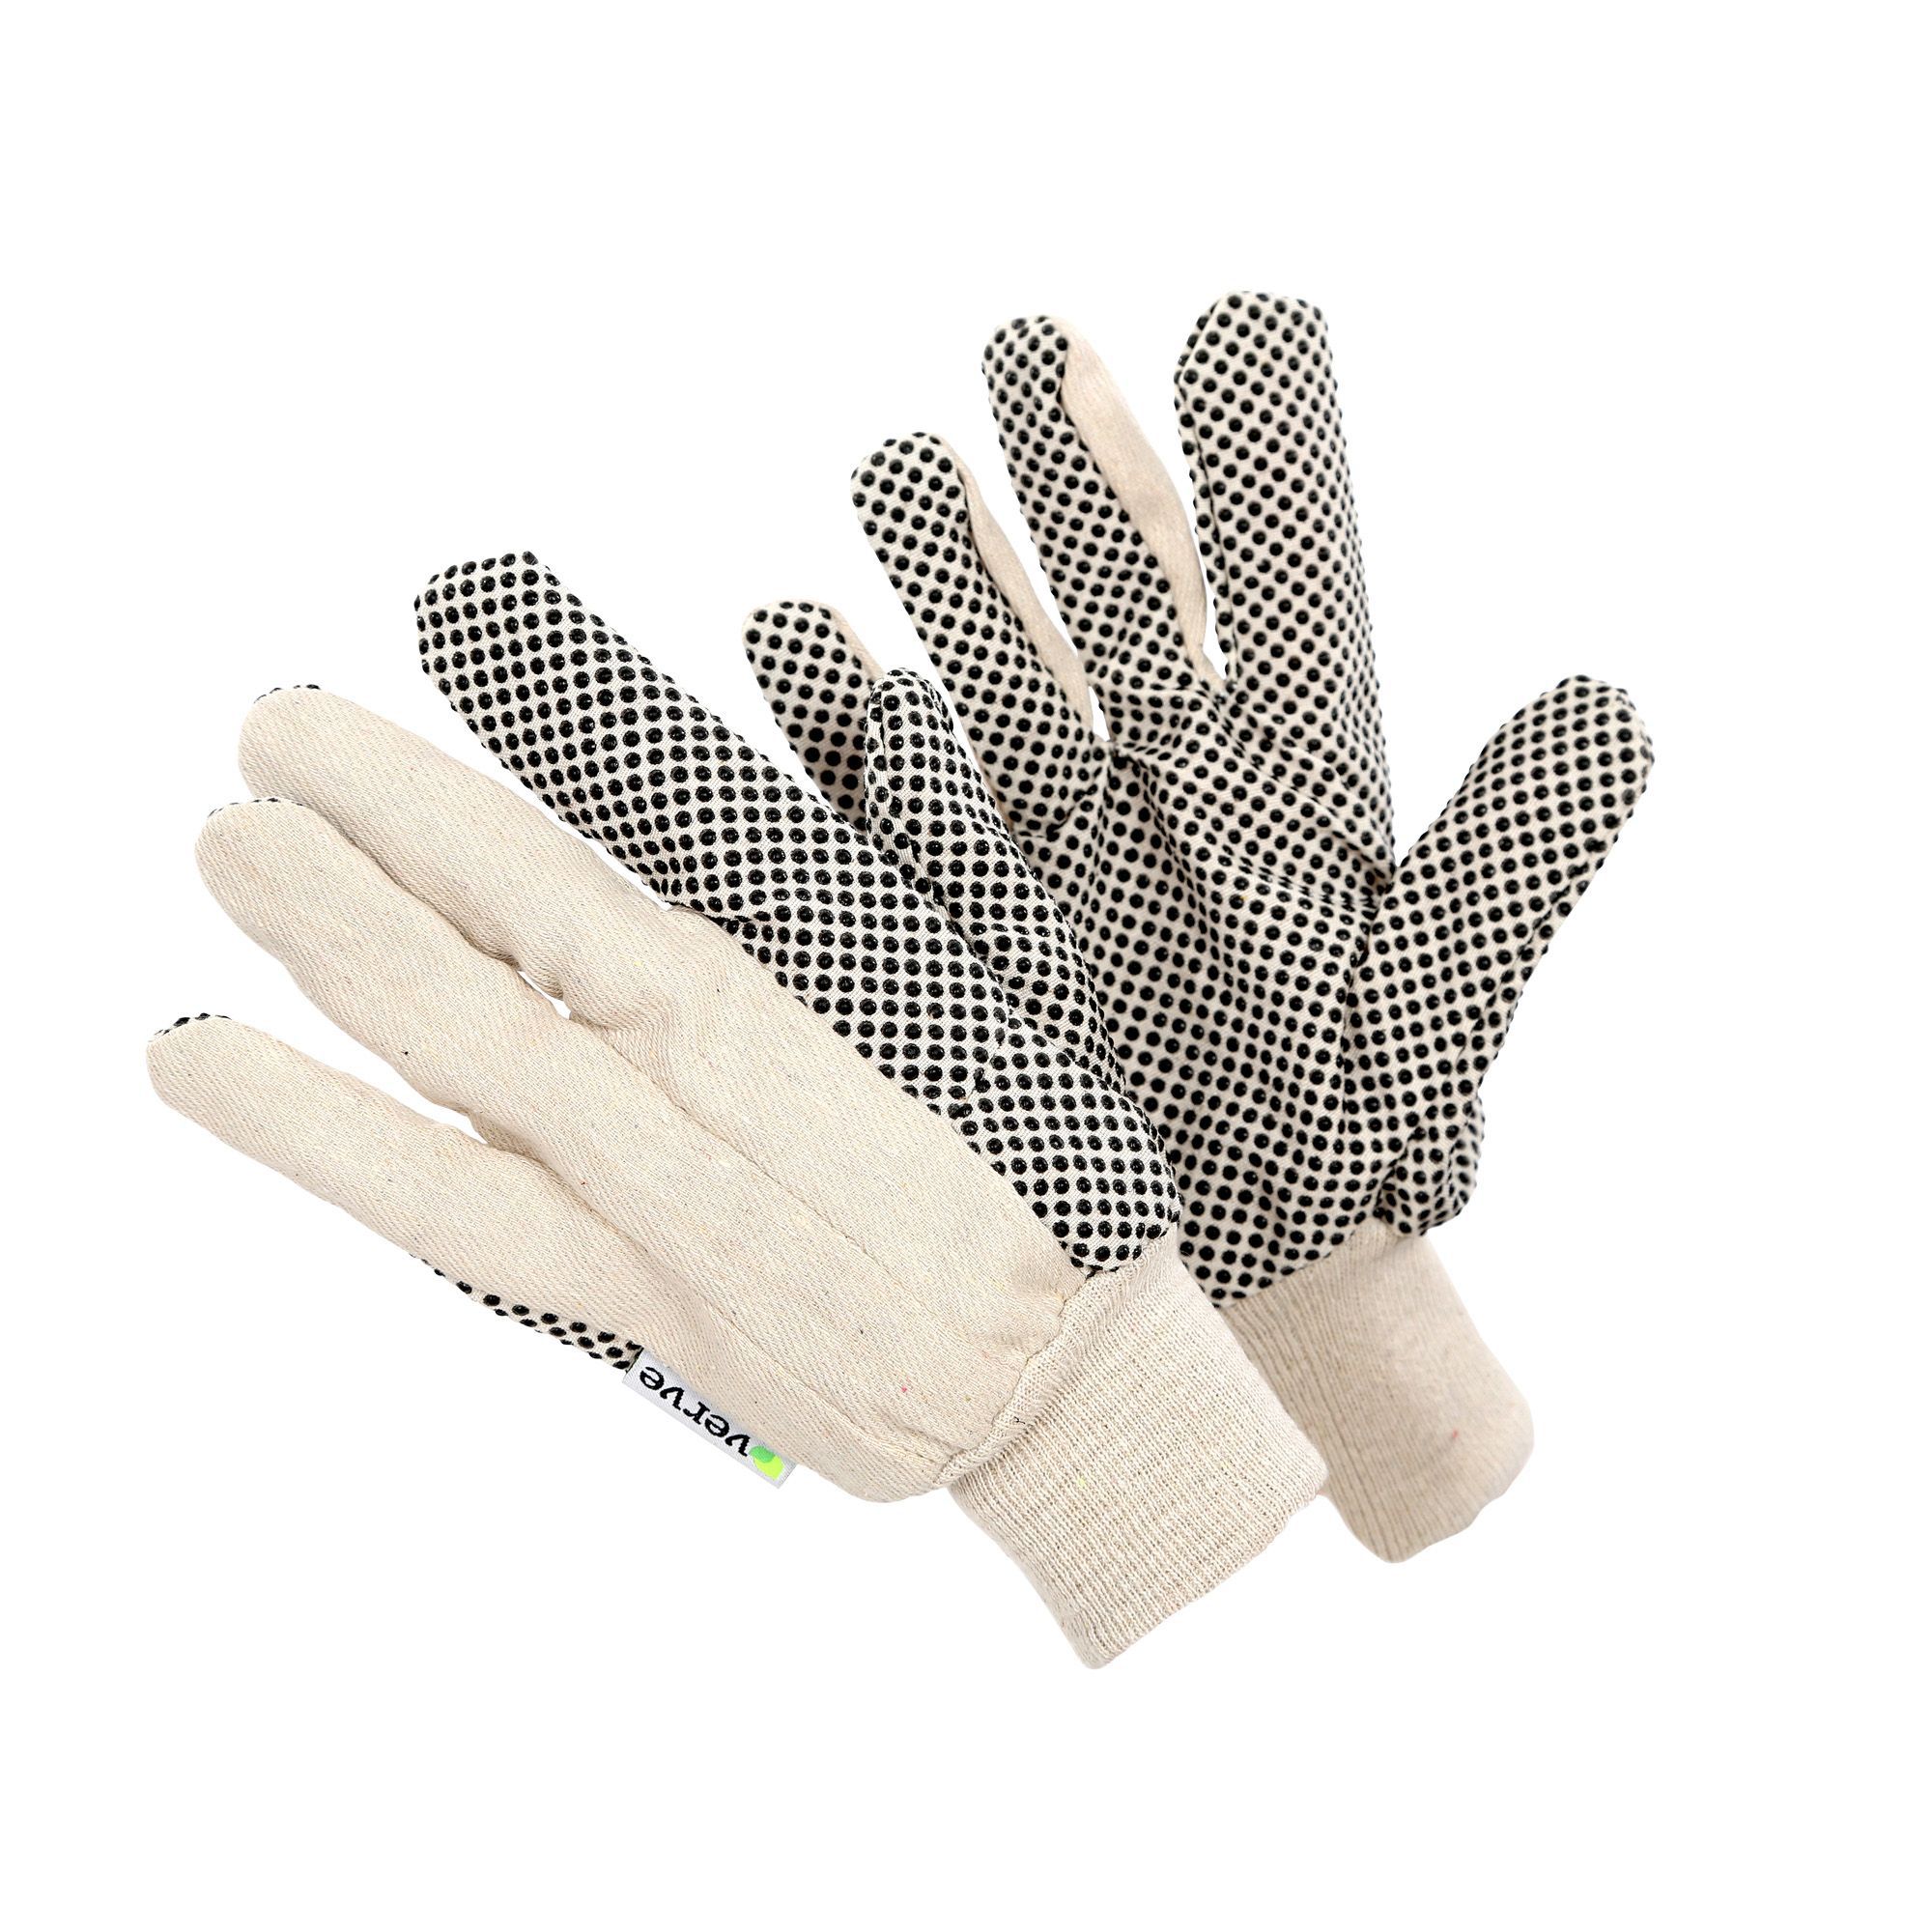 Verve Cream & grey Non safety gloves